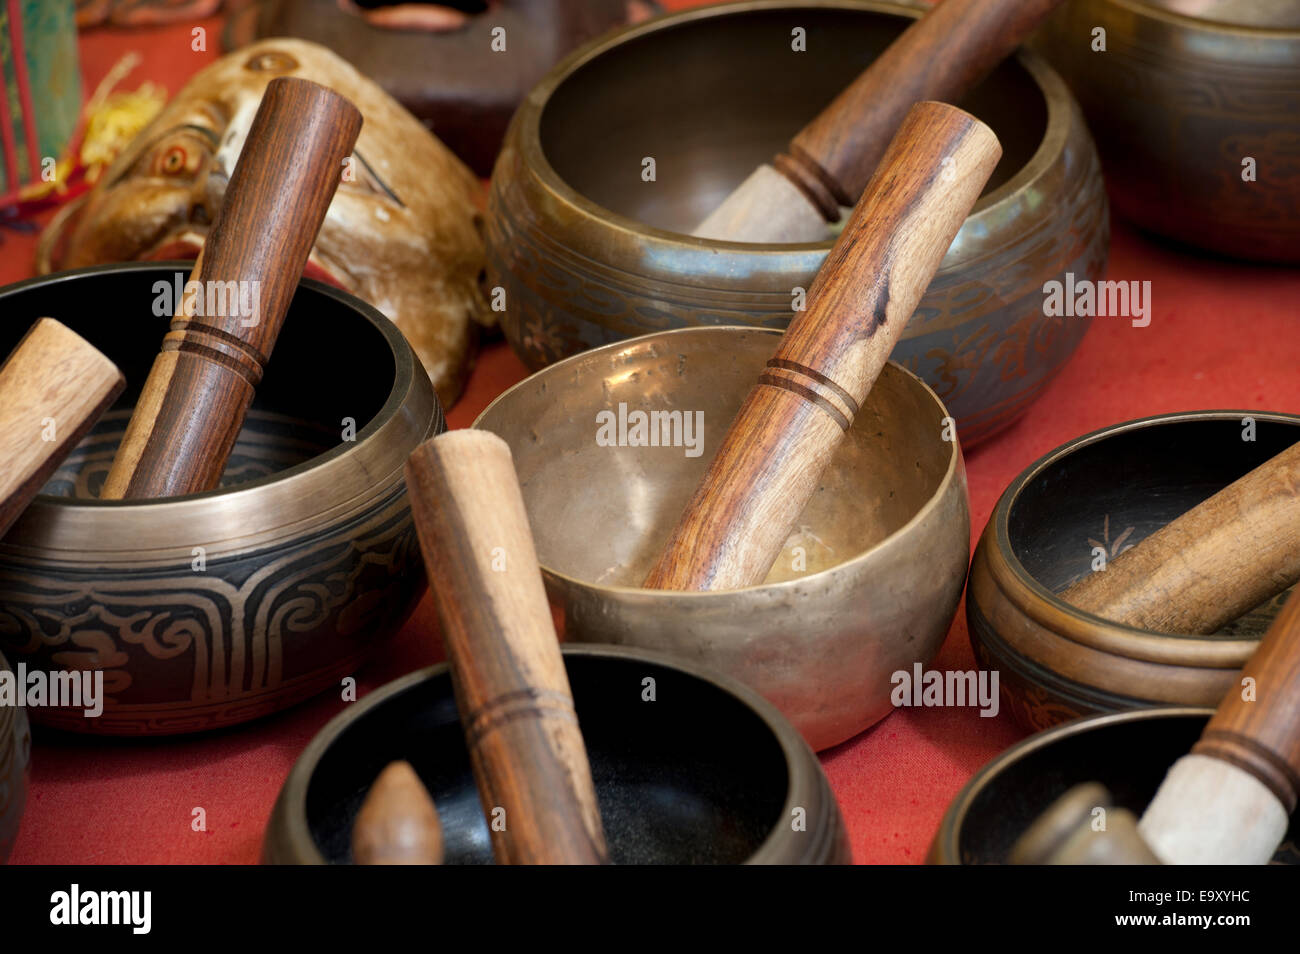 Display of Bhutanese handicraft, Thimphu, Bhutan Stock Photo